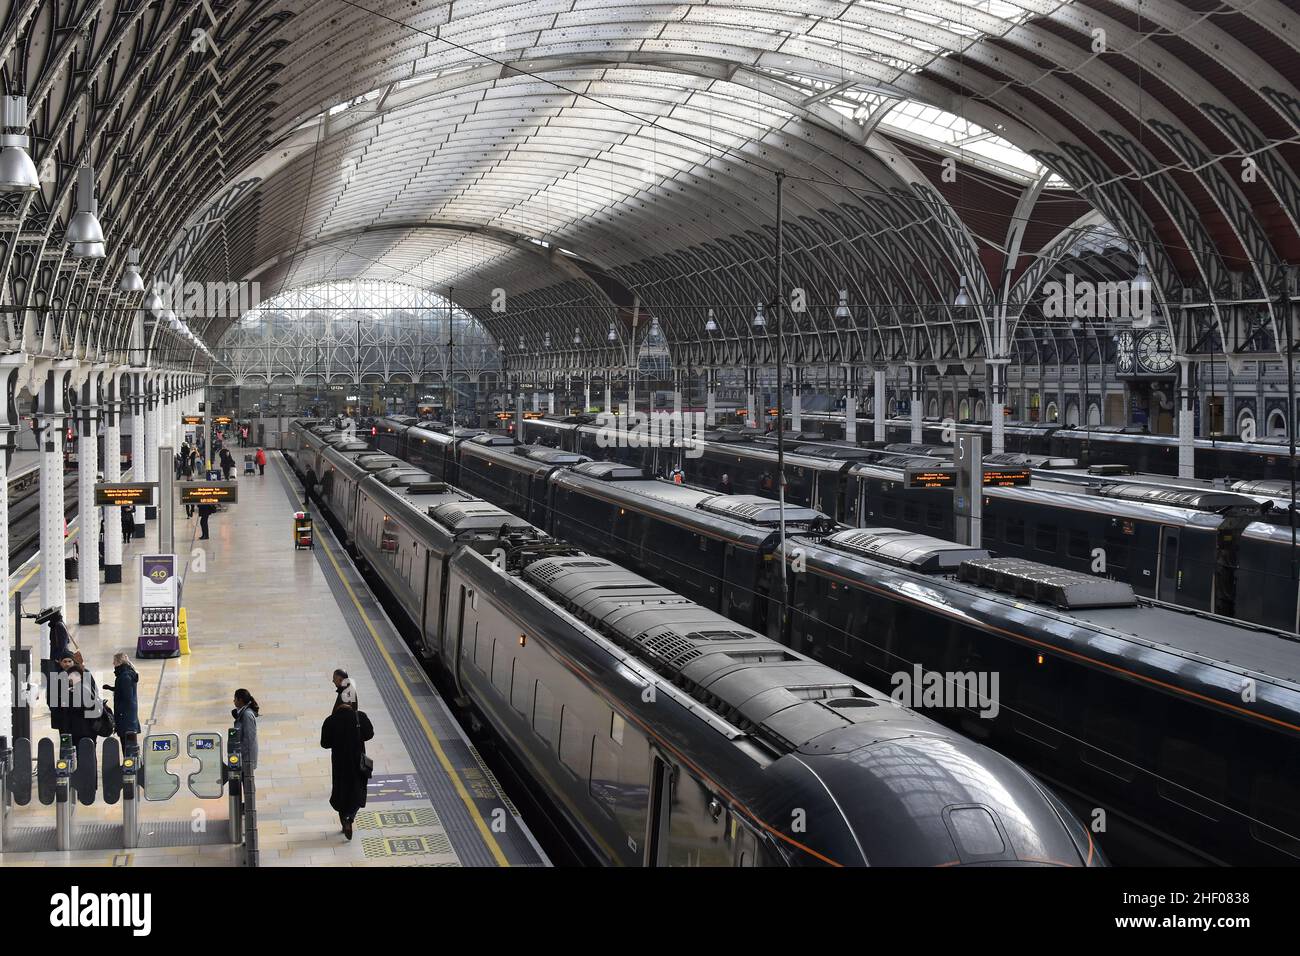 GWR - Great Western Railway trains à plate-forme, Paddington Station à Londres Royaume-Uni. Banque D'Images